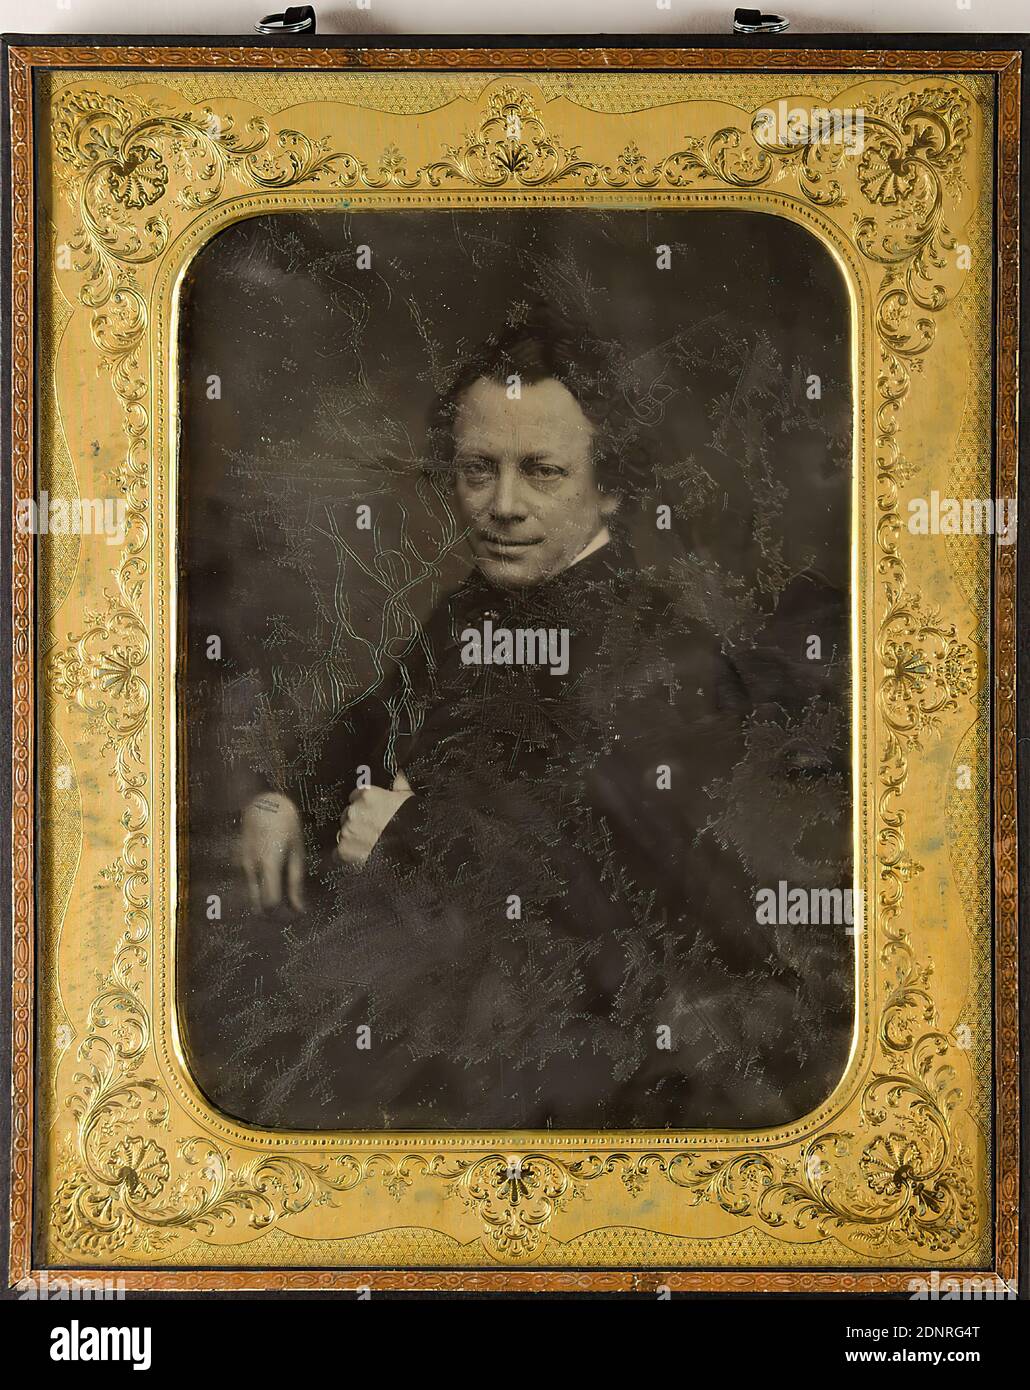 Carl Heinrich Oskar Fielitz, l'acteur Georg Friedrich Starke (1815-1858), daguerréotype, taille de l'image: Hauteur: 19.00 cm; largeur: 14.00 cm, en encre bleue sur l'étiquette: Titel; en plume bleue sur l'étiquette: Fotograf; en encre noire sur l'étiquette: D. p. 198, ; Timbre des douanes douane I-32, photographie de portrait, homme, portrait en demi-longueur, figure assise, personne historique, acteur, actrice Banque D'Images